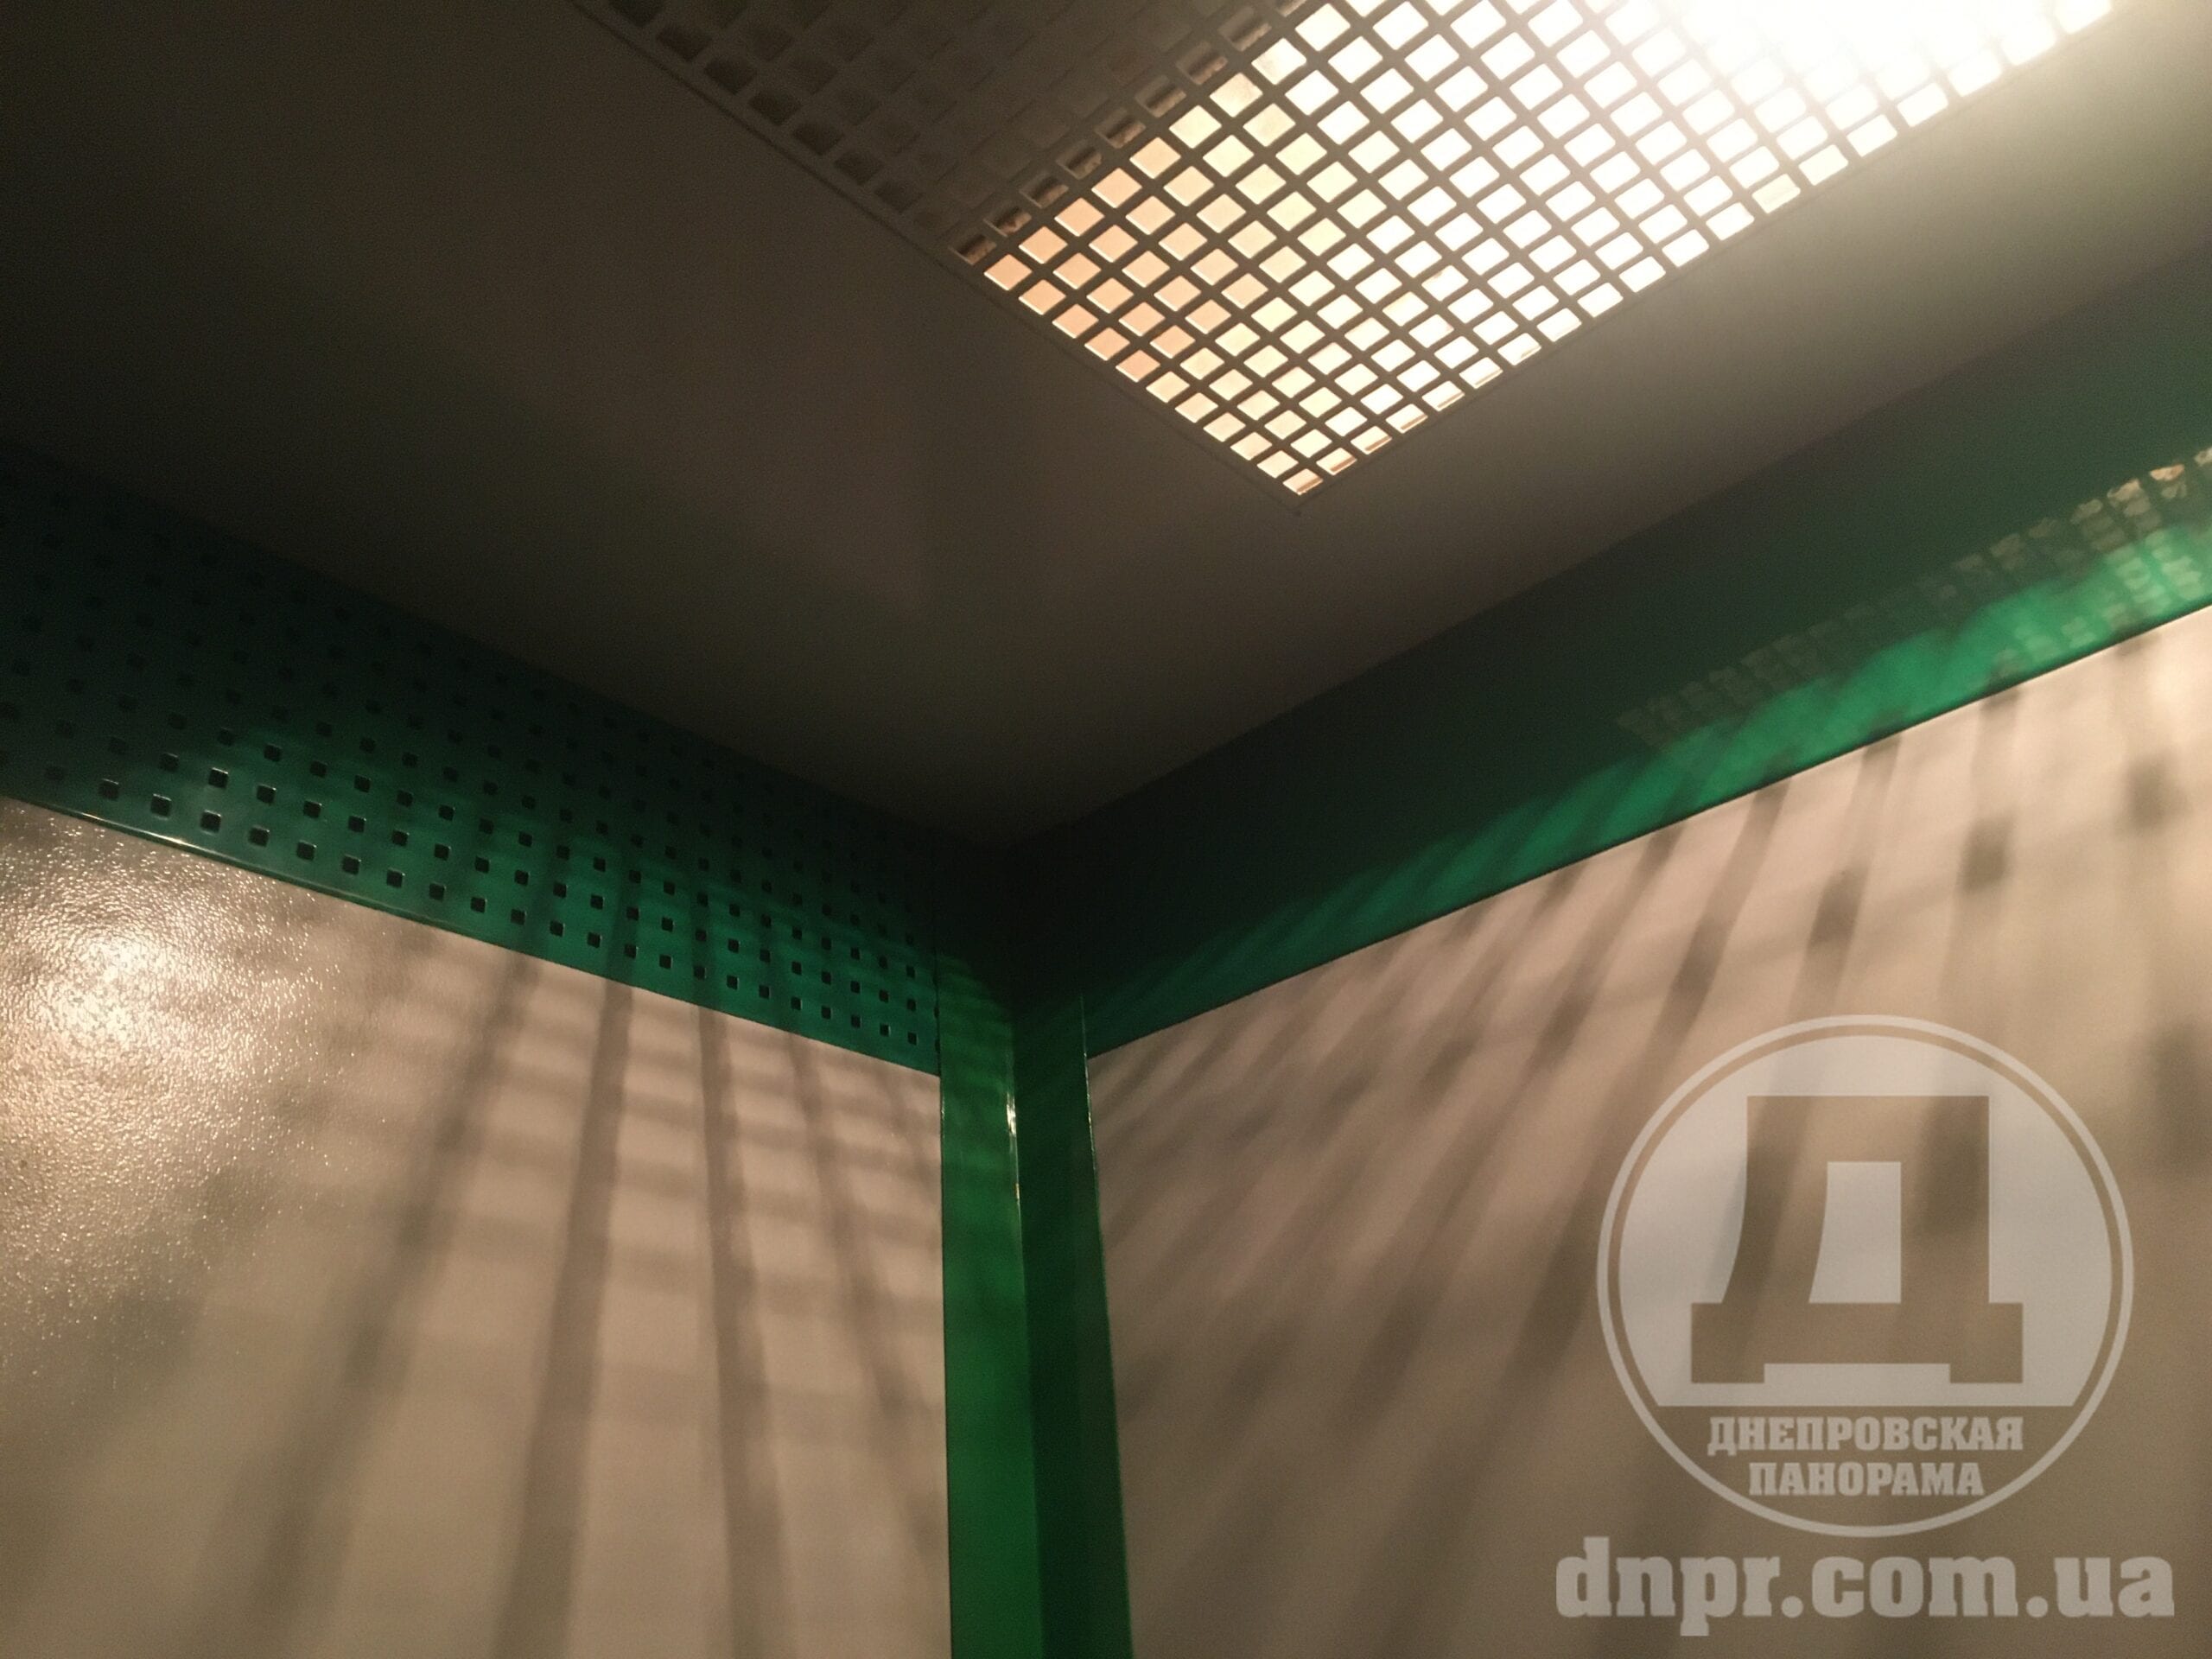 Впервые за много лет: в днепровской многоэтажке отремонтировали лифт (Фото/Видео)